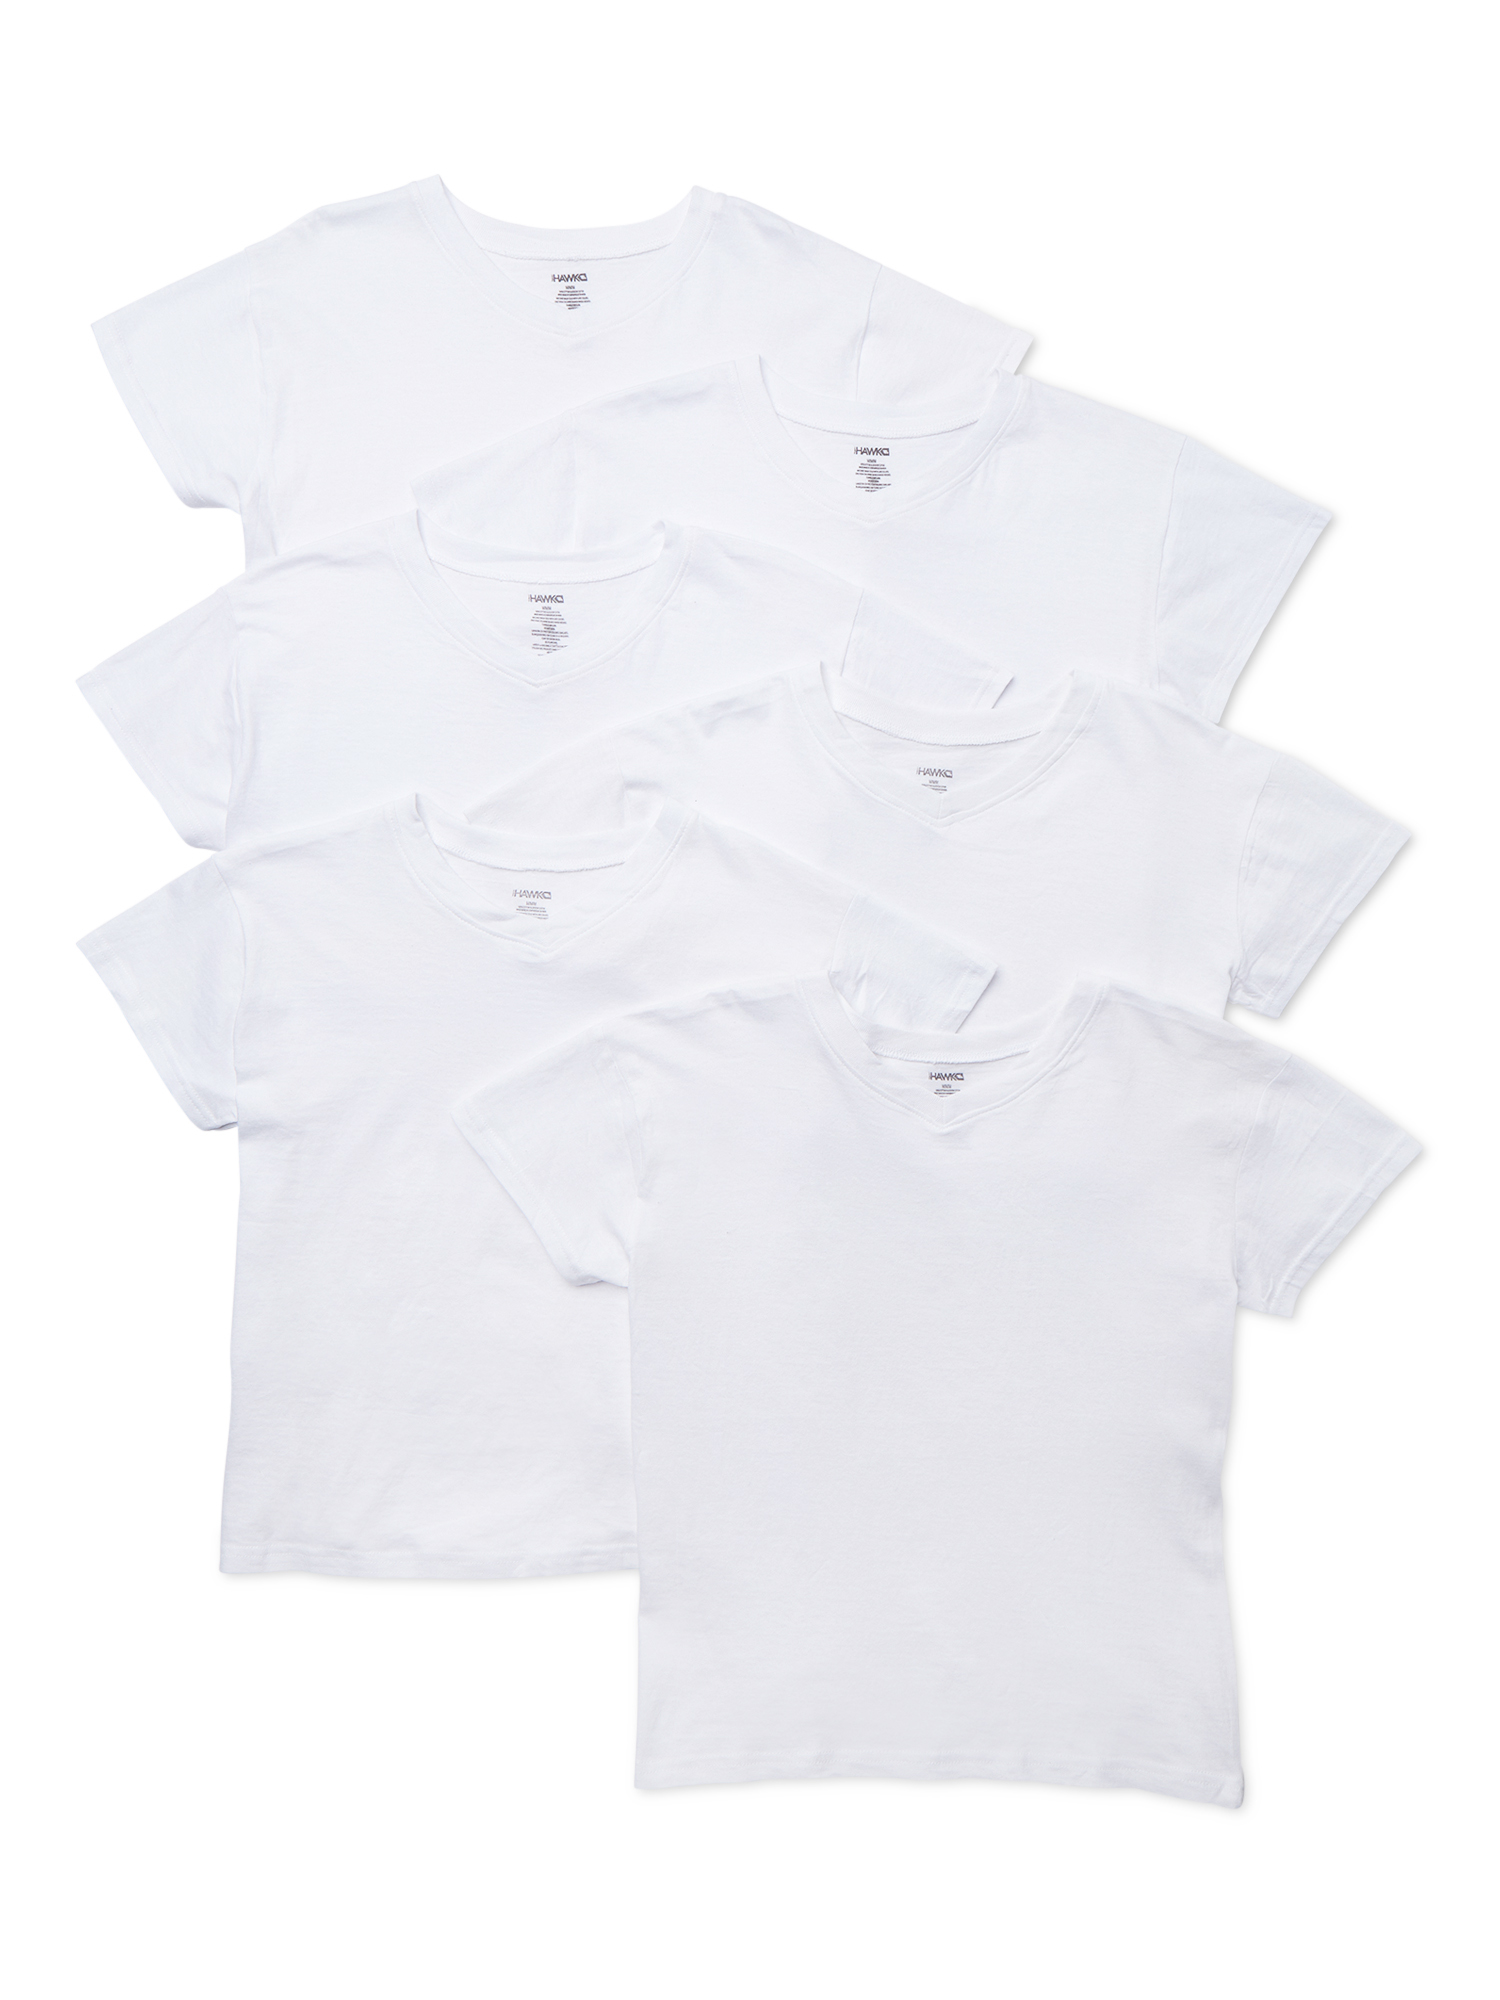 Tony Hawk Boys Undershirts, 6 Pack V-Neck Undershirts Sizes 6 - 20 - image 1 of 2